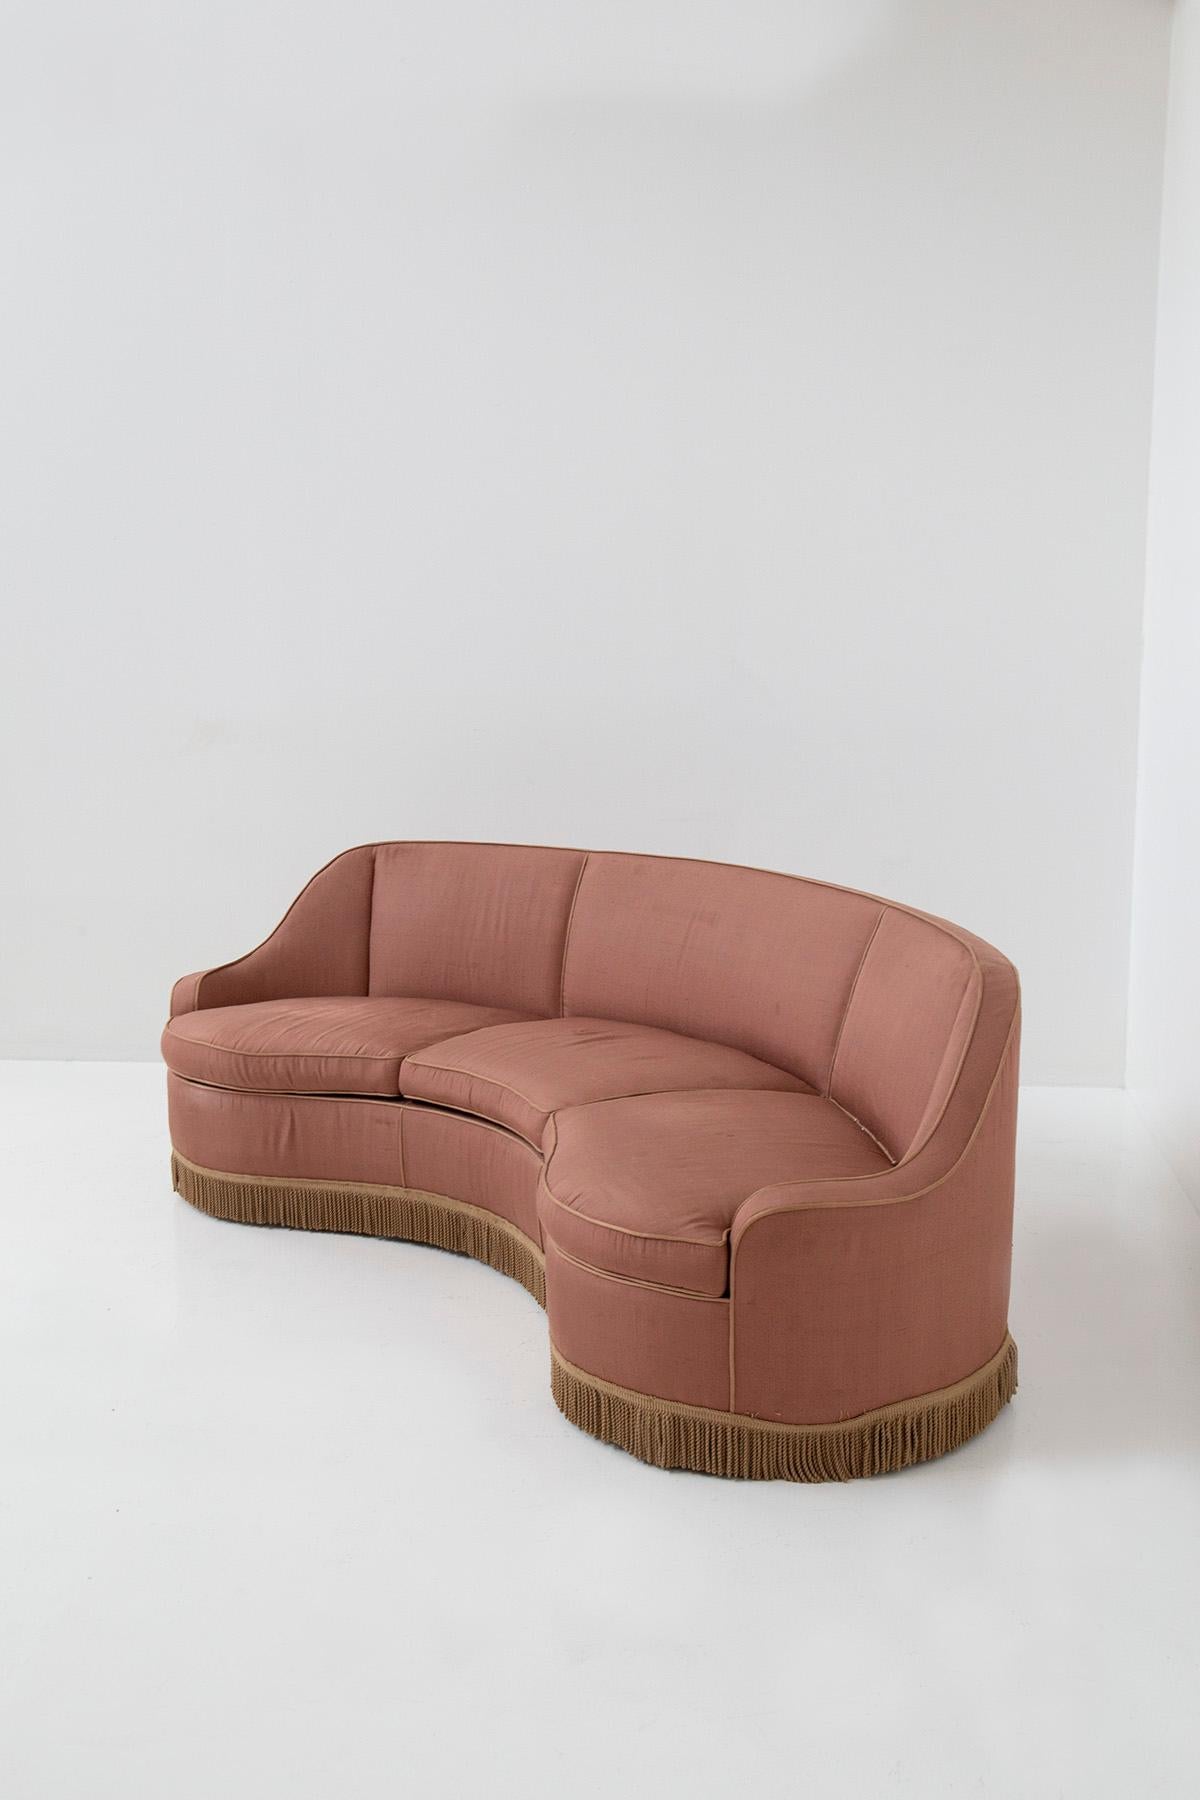 Italian three-seater sofa in pink fabric attributed to Gio Ponti 7